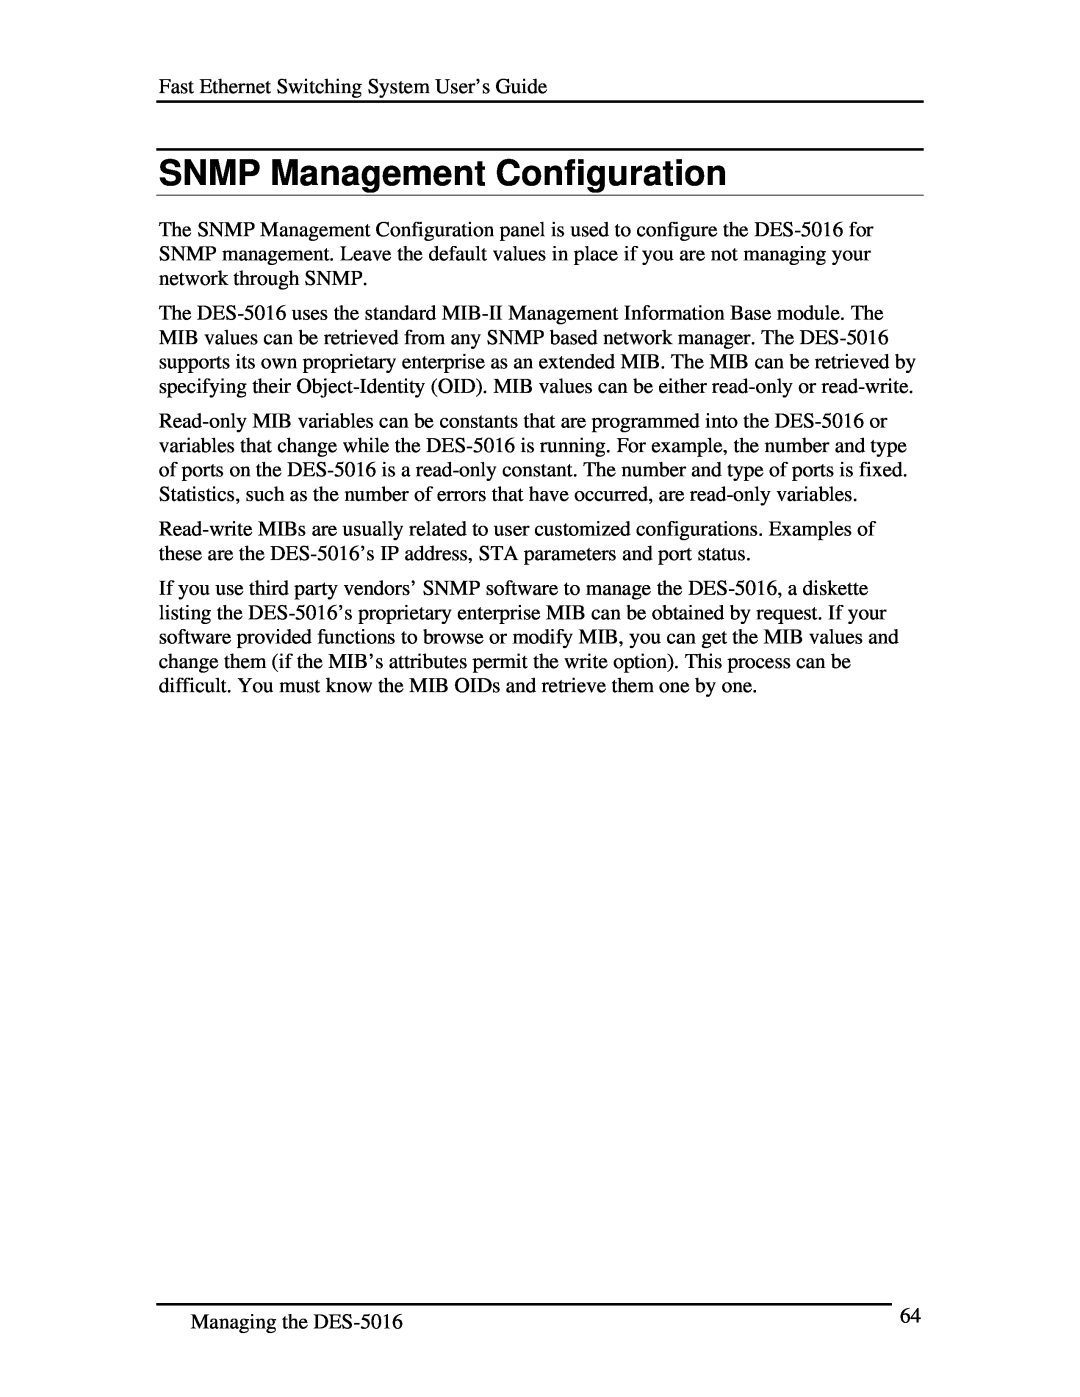 D-Link DES-5016 manual SNMP Management Configuration 